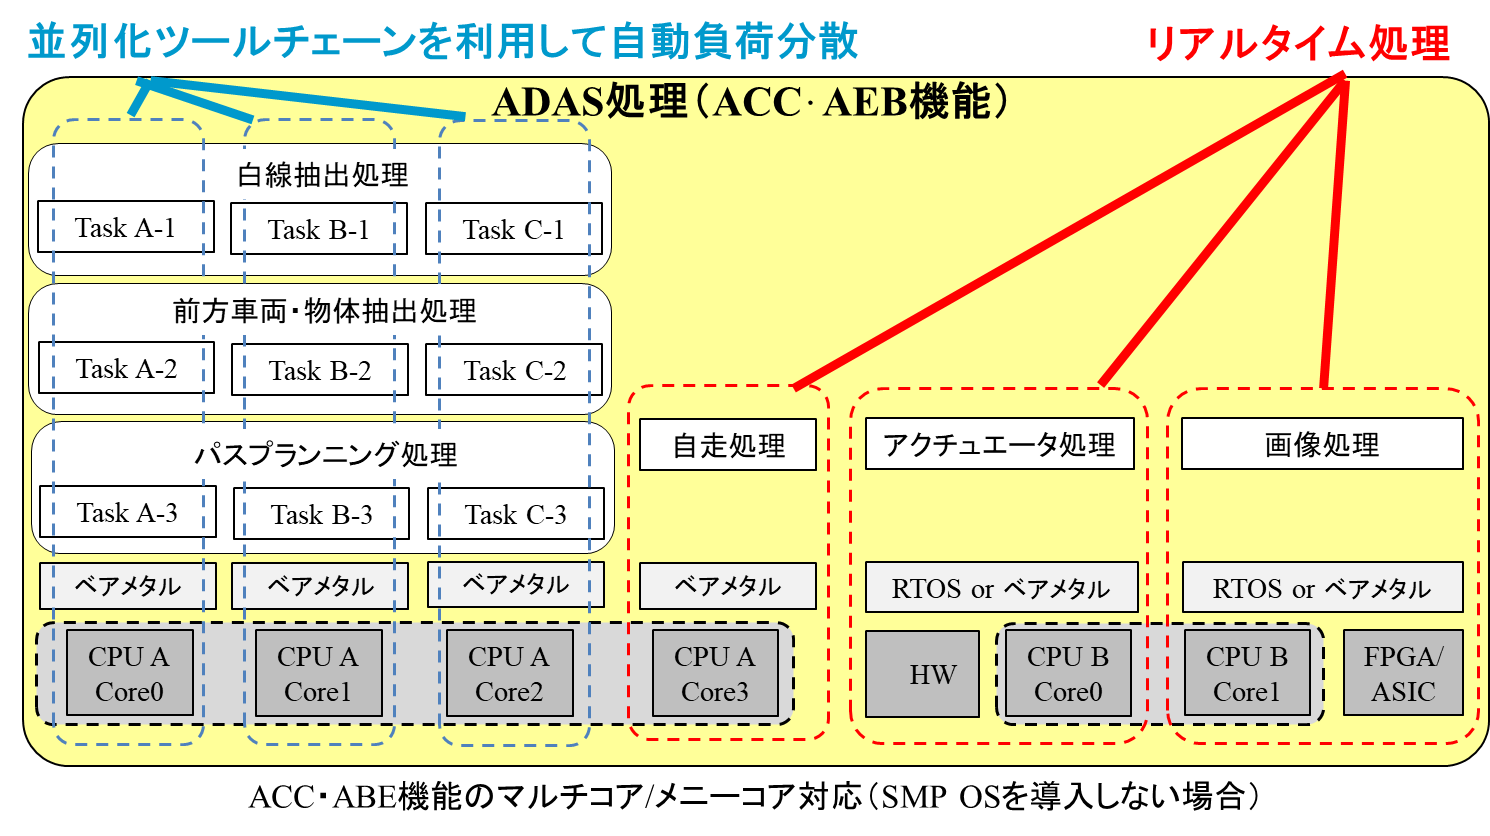 図 13: ACC・ABE機能のマルチコア/メニーコア対応